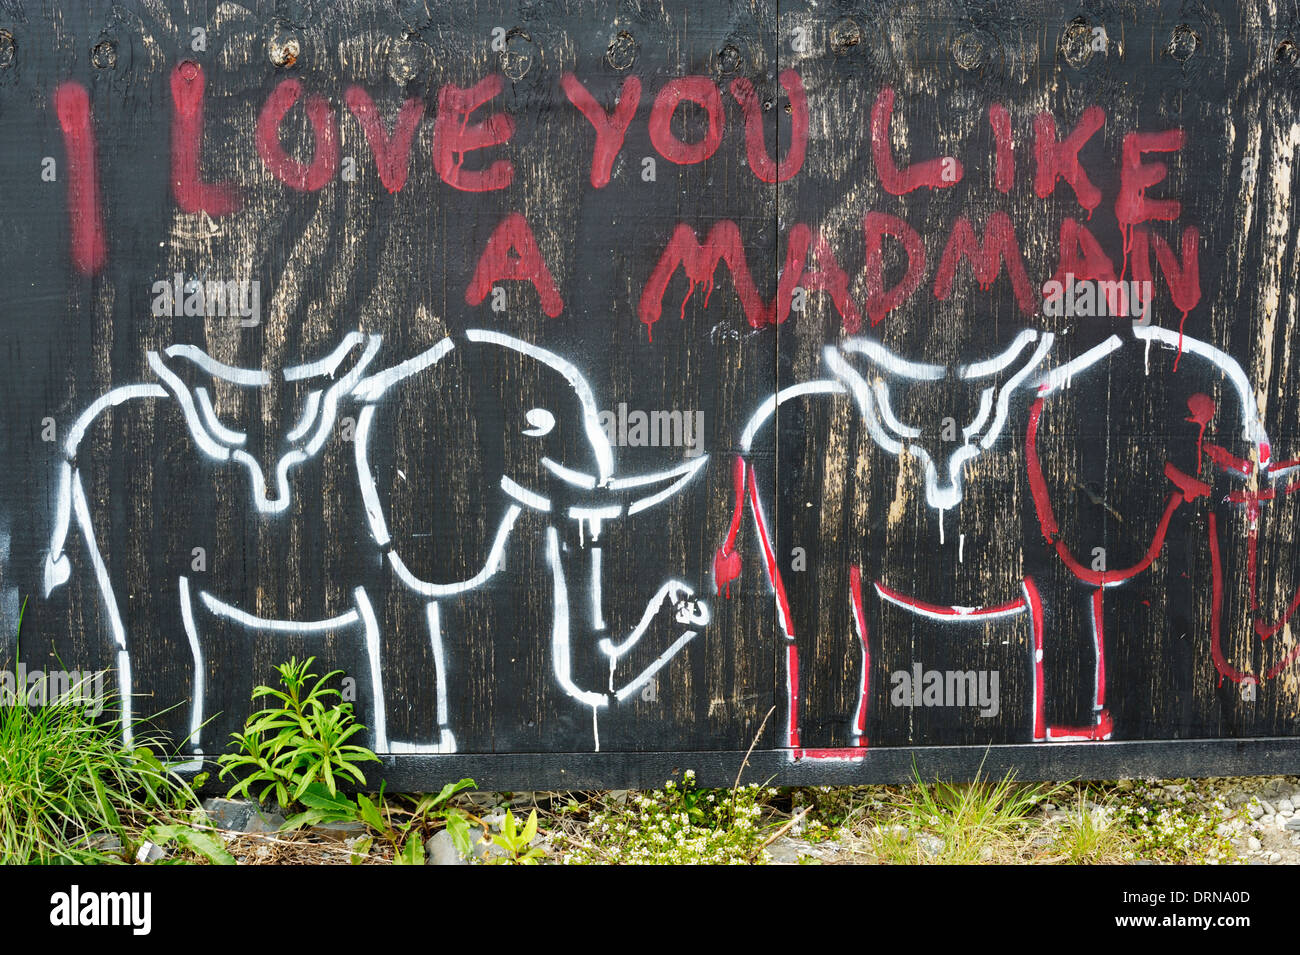 Les graffitis, écriture rouge sur fond noir, 'Je t'aime comme un fou" avec des dessins de l'éléphant, le Pays de Galles, Royaume-Uni Banque D'Images